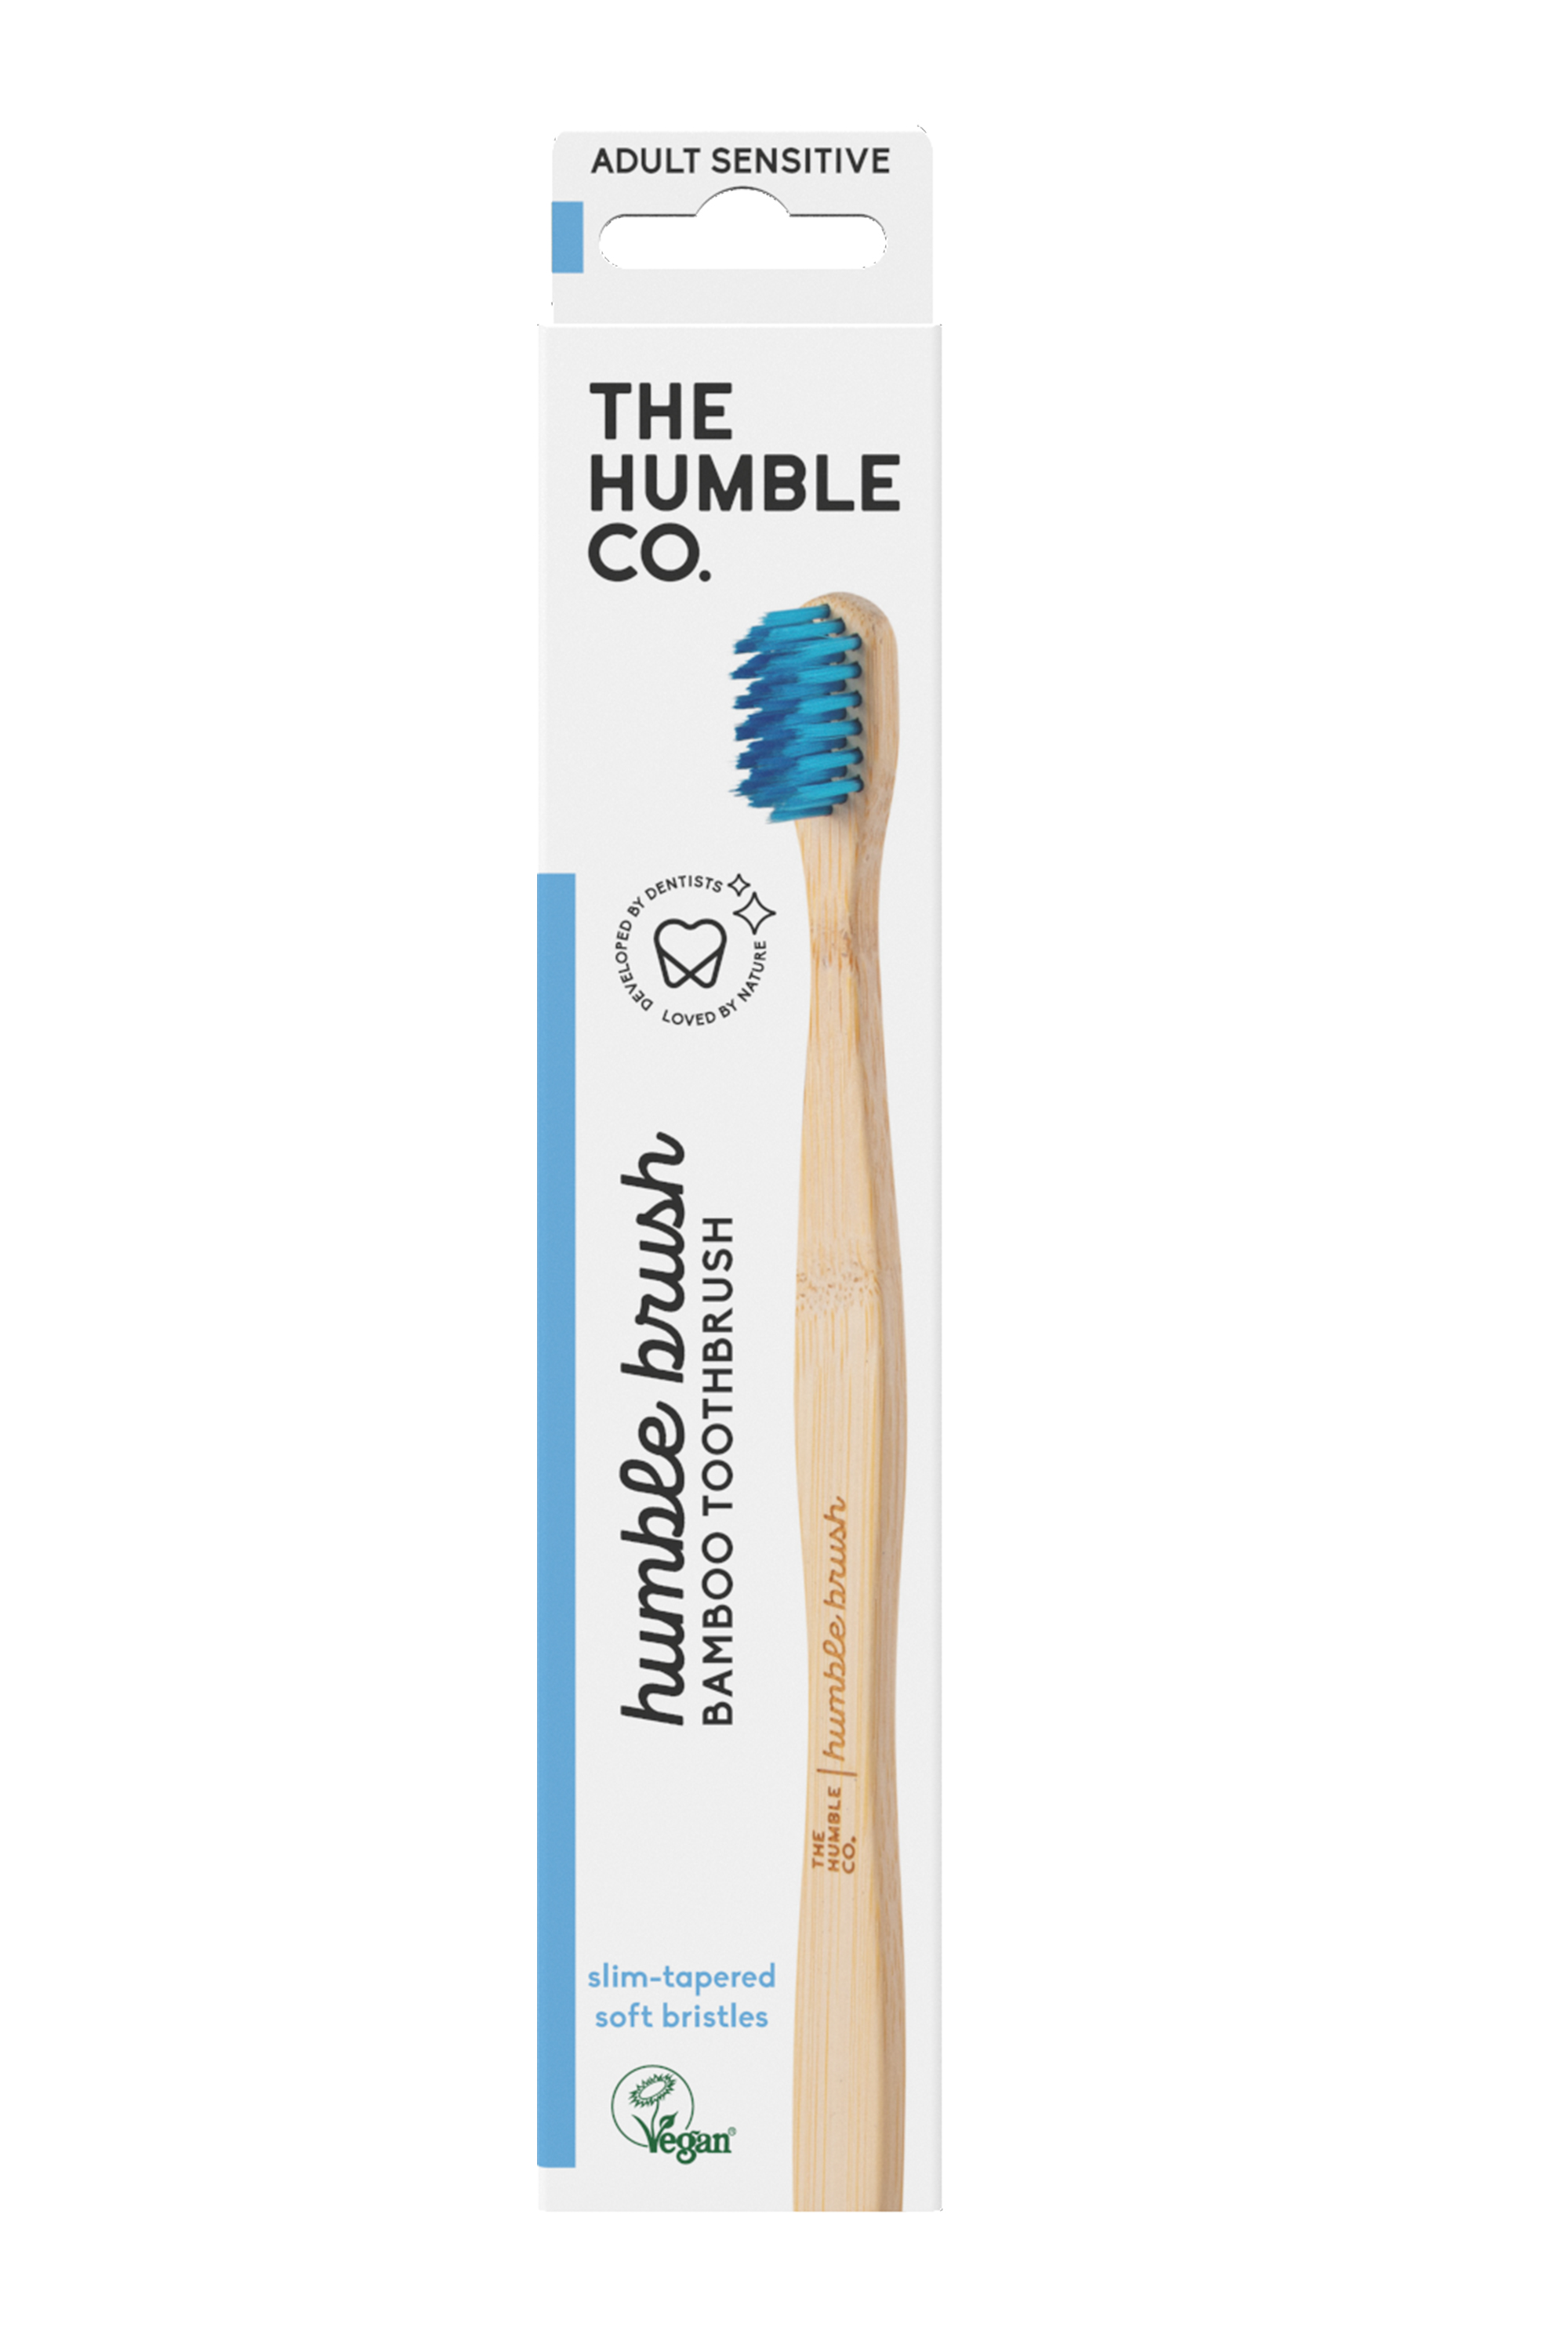 The Humble Co. Humble Brush Adult Sensitive, Blue, 1 stk